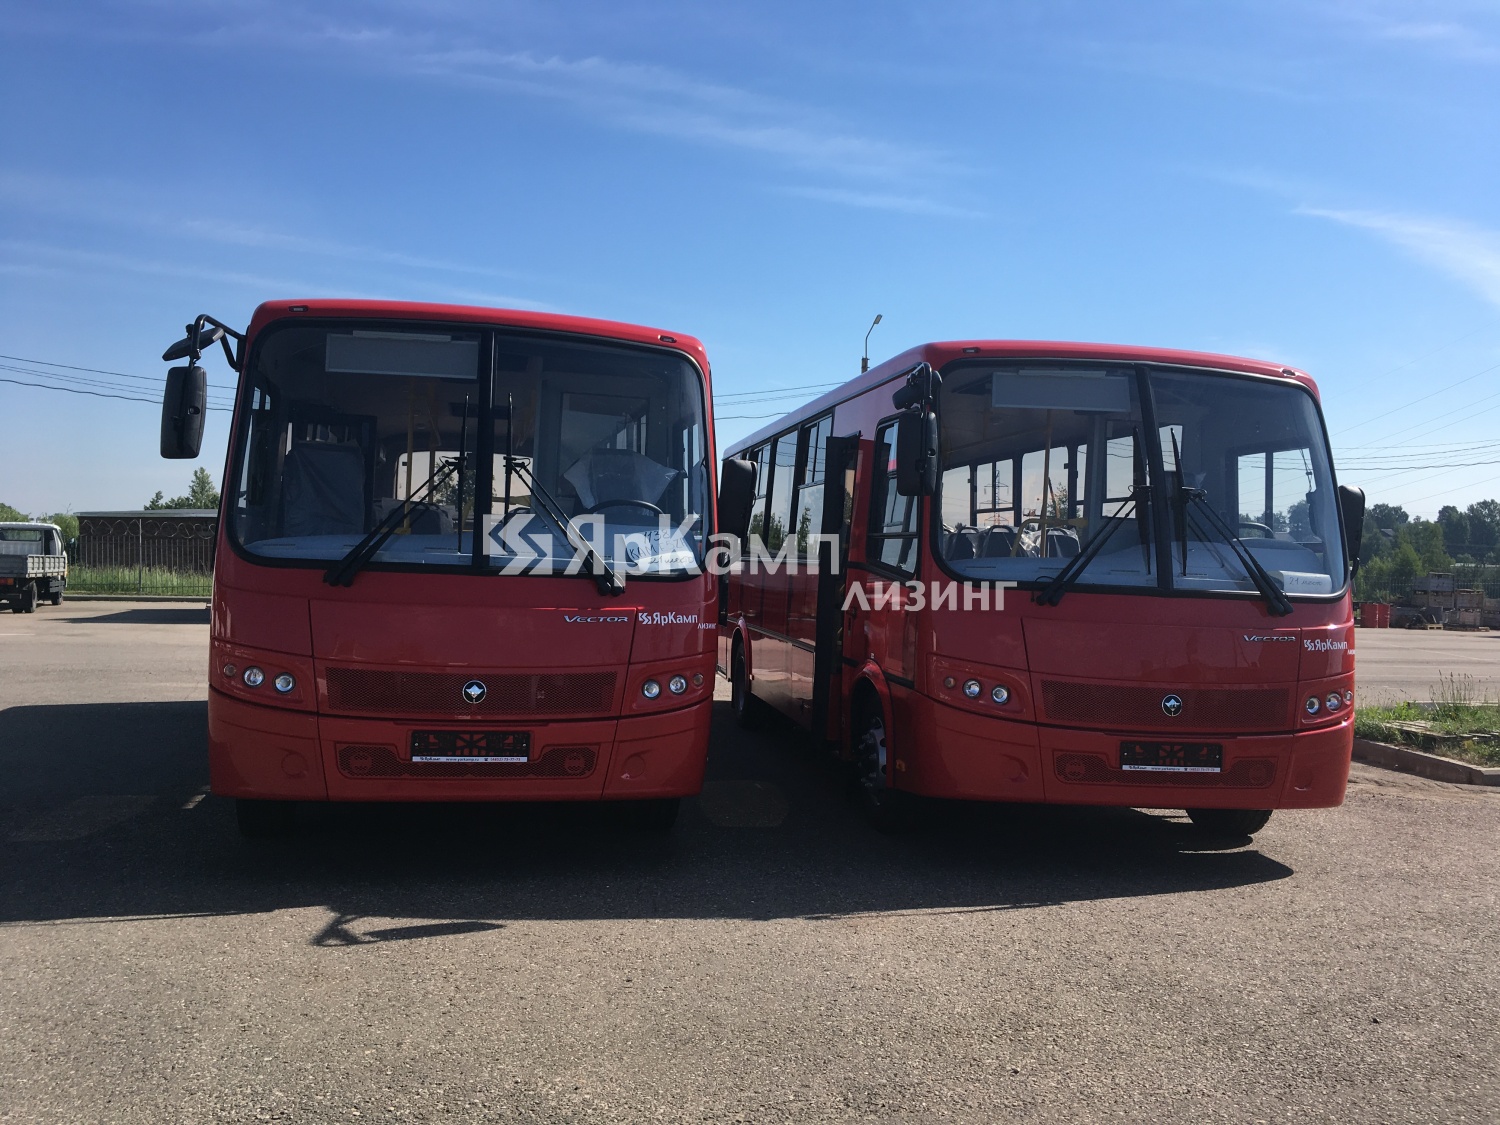 "ЯрКамп-Лизинг" осуществил отгрузку на правах финансовой аренды двух автобусов ПАЗ Vector